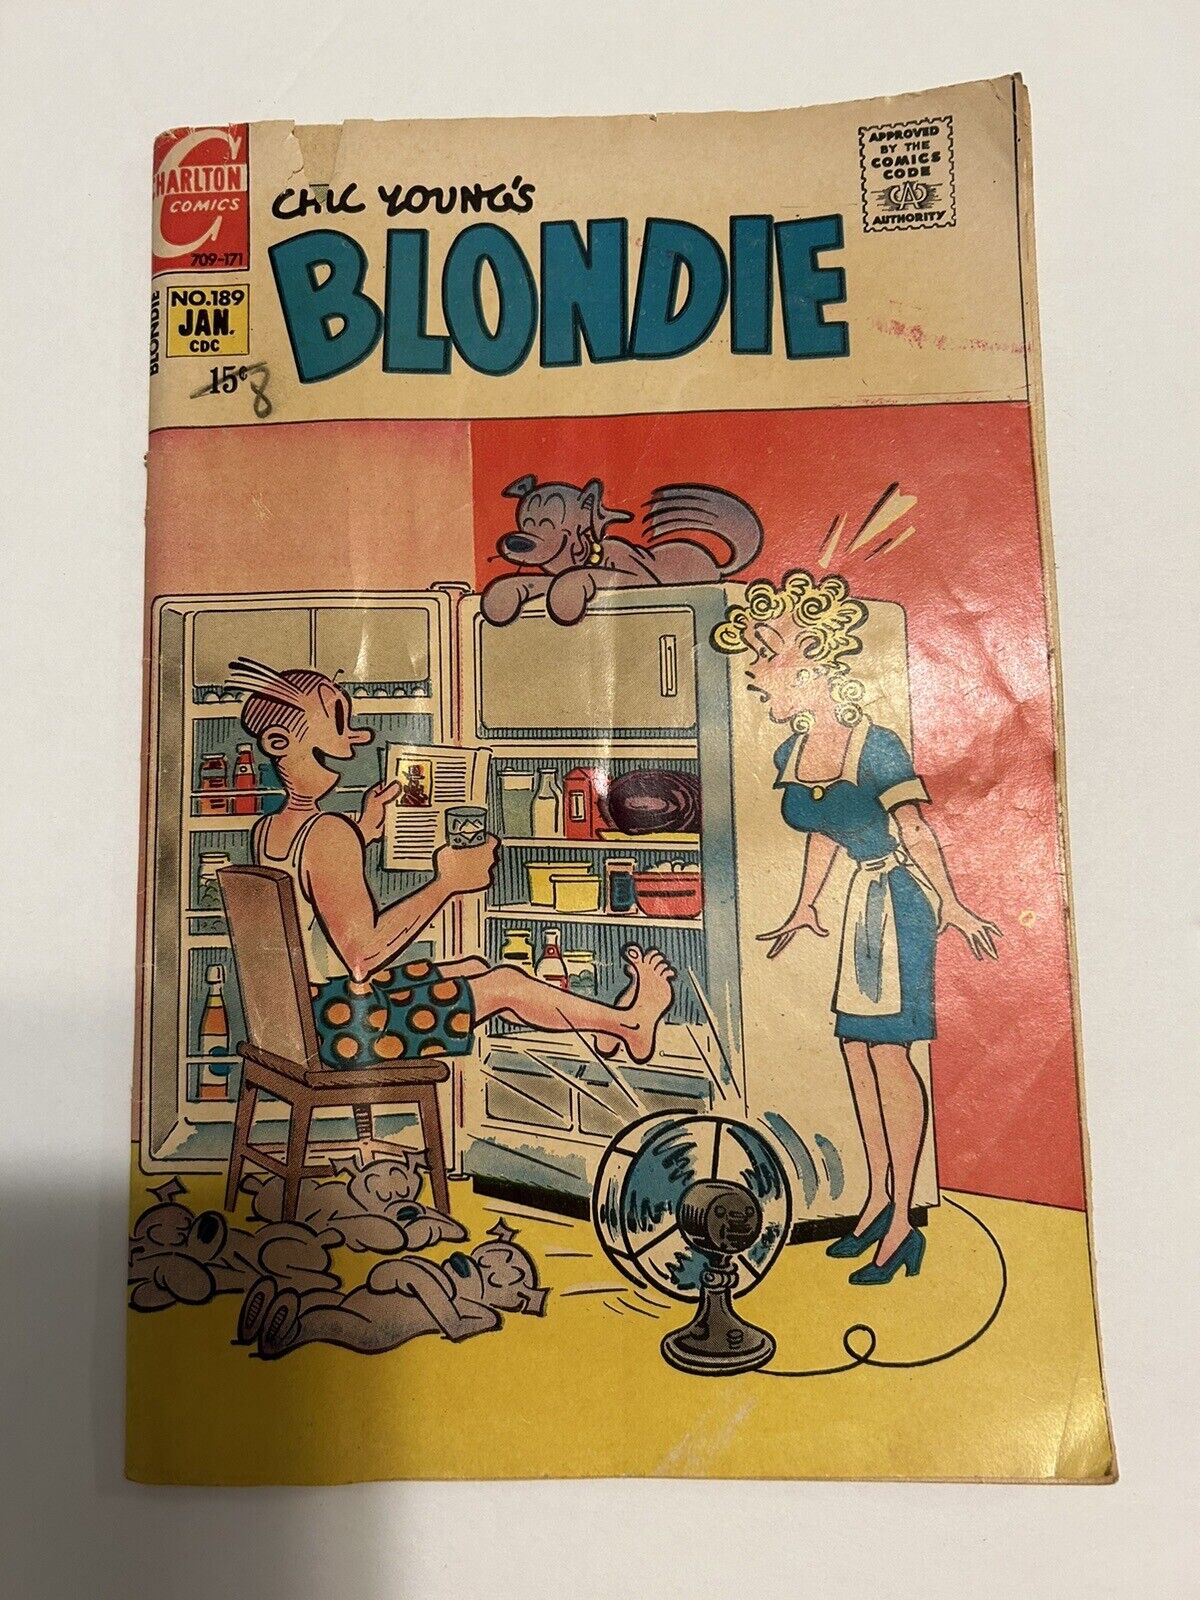 Blondie #189 January 1971